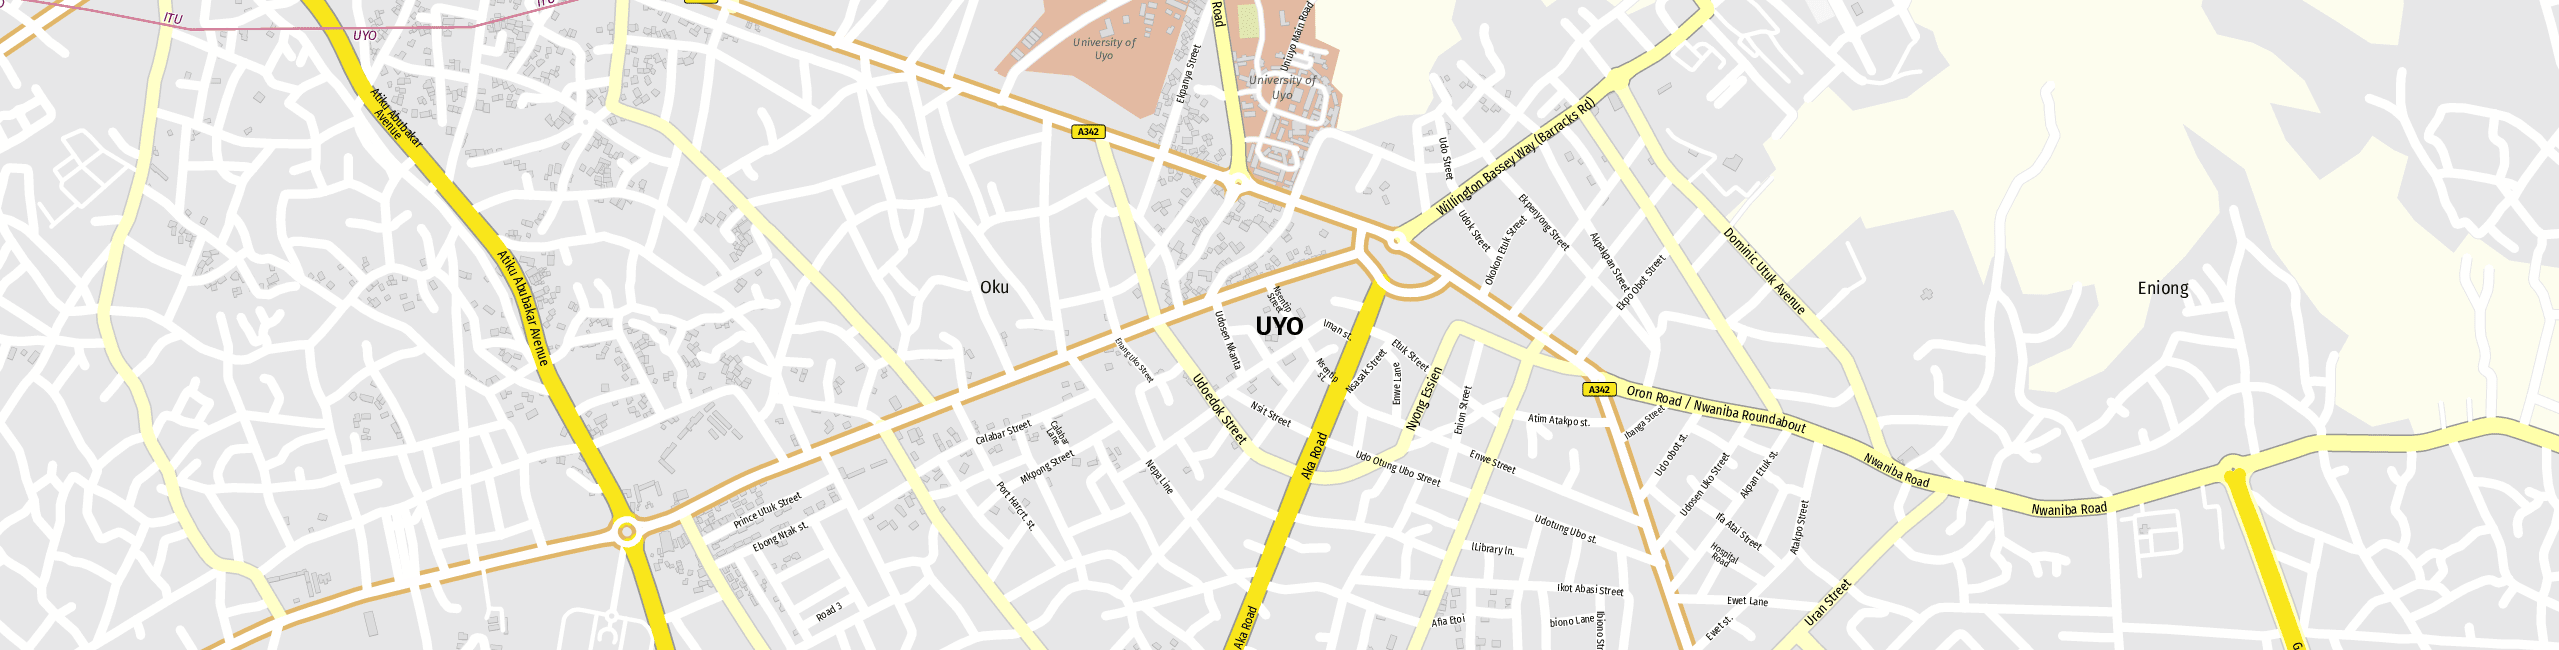 Stadtplan Uyo zum Downloaden.